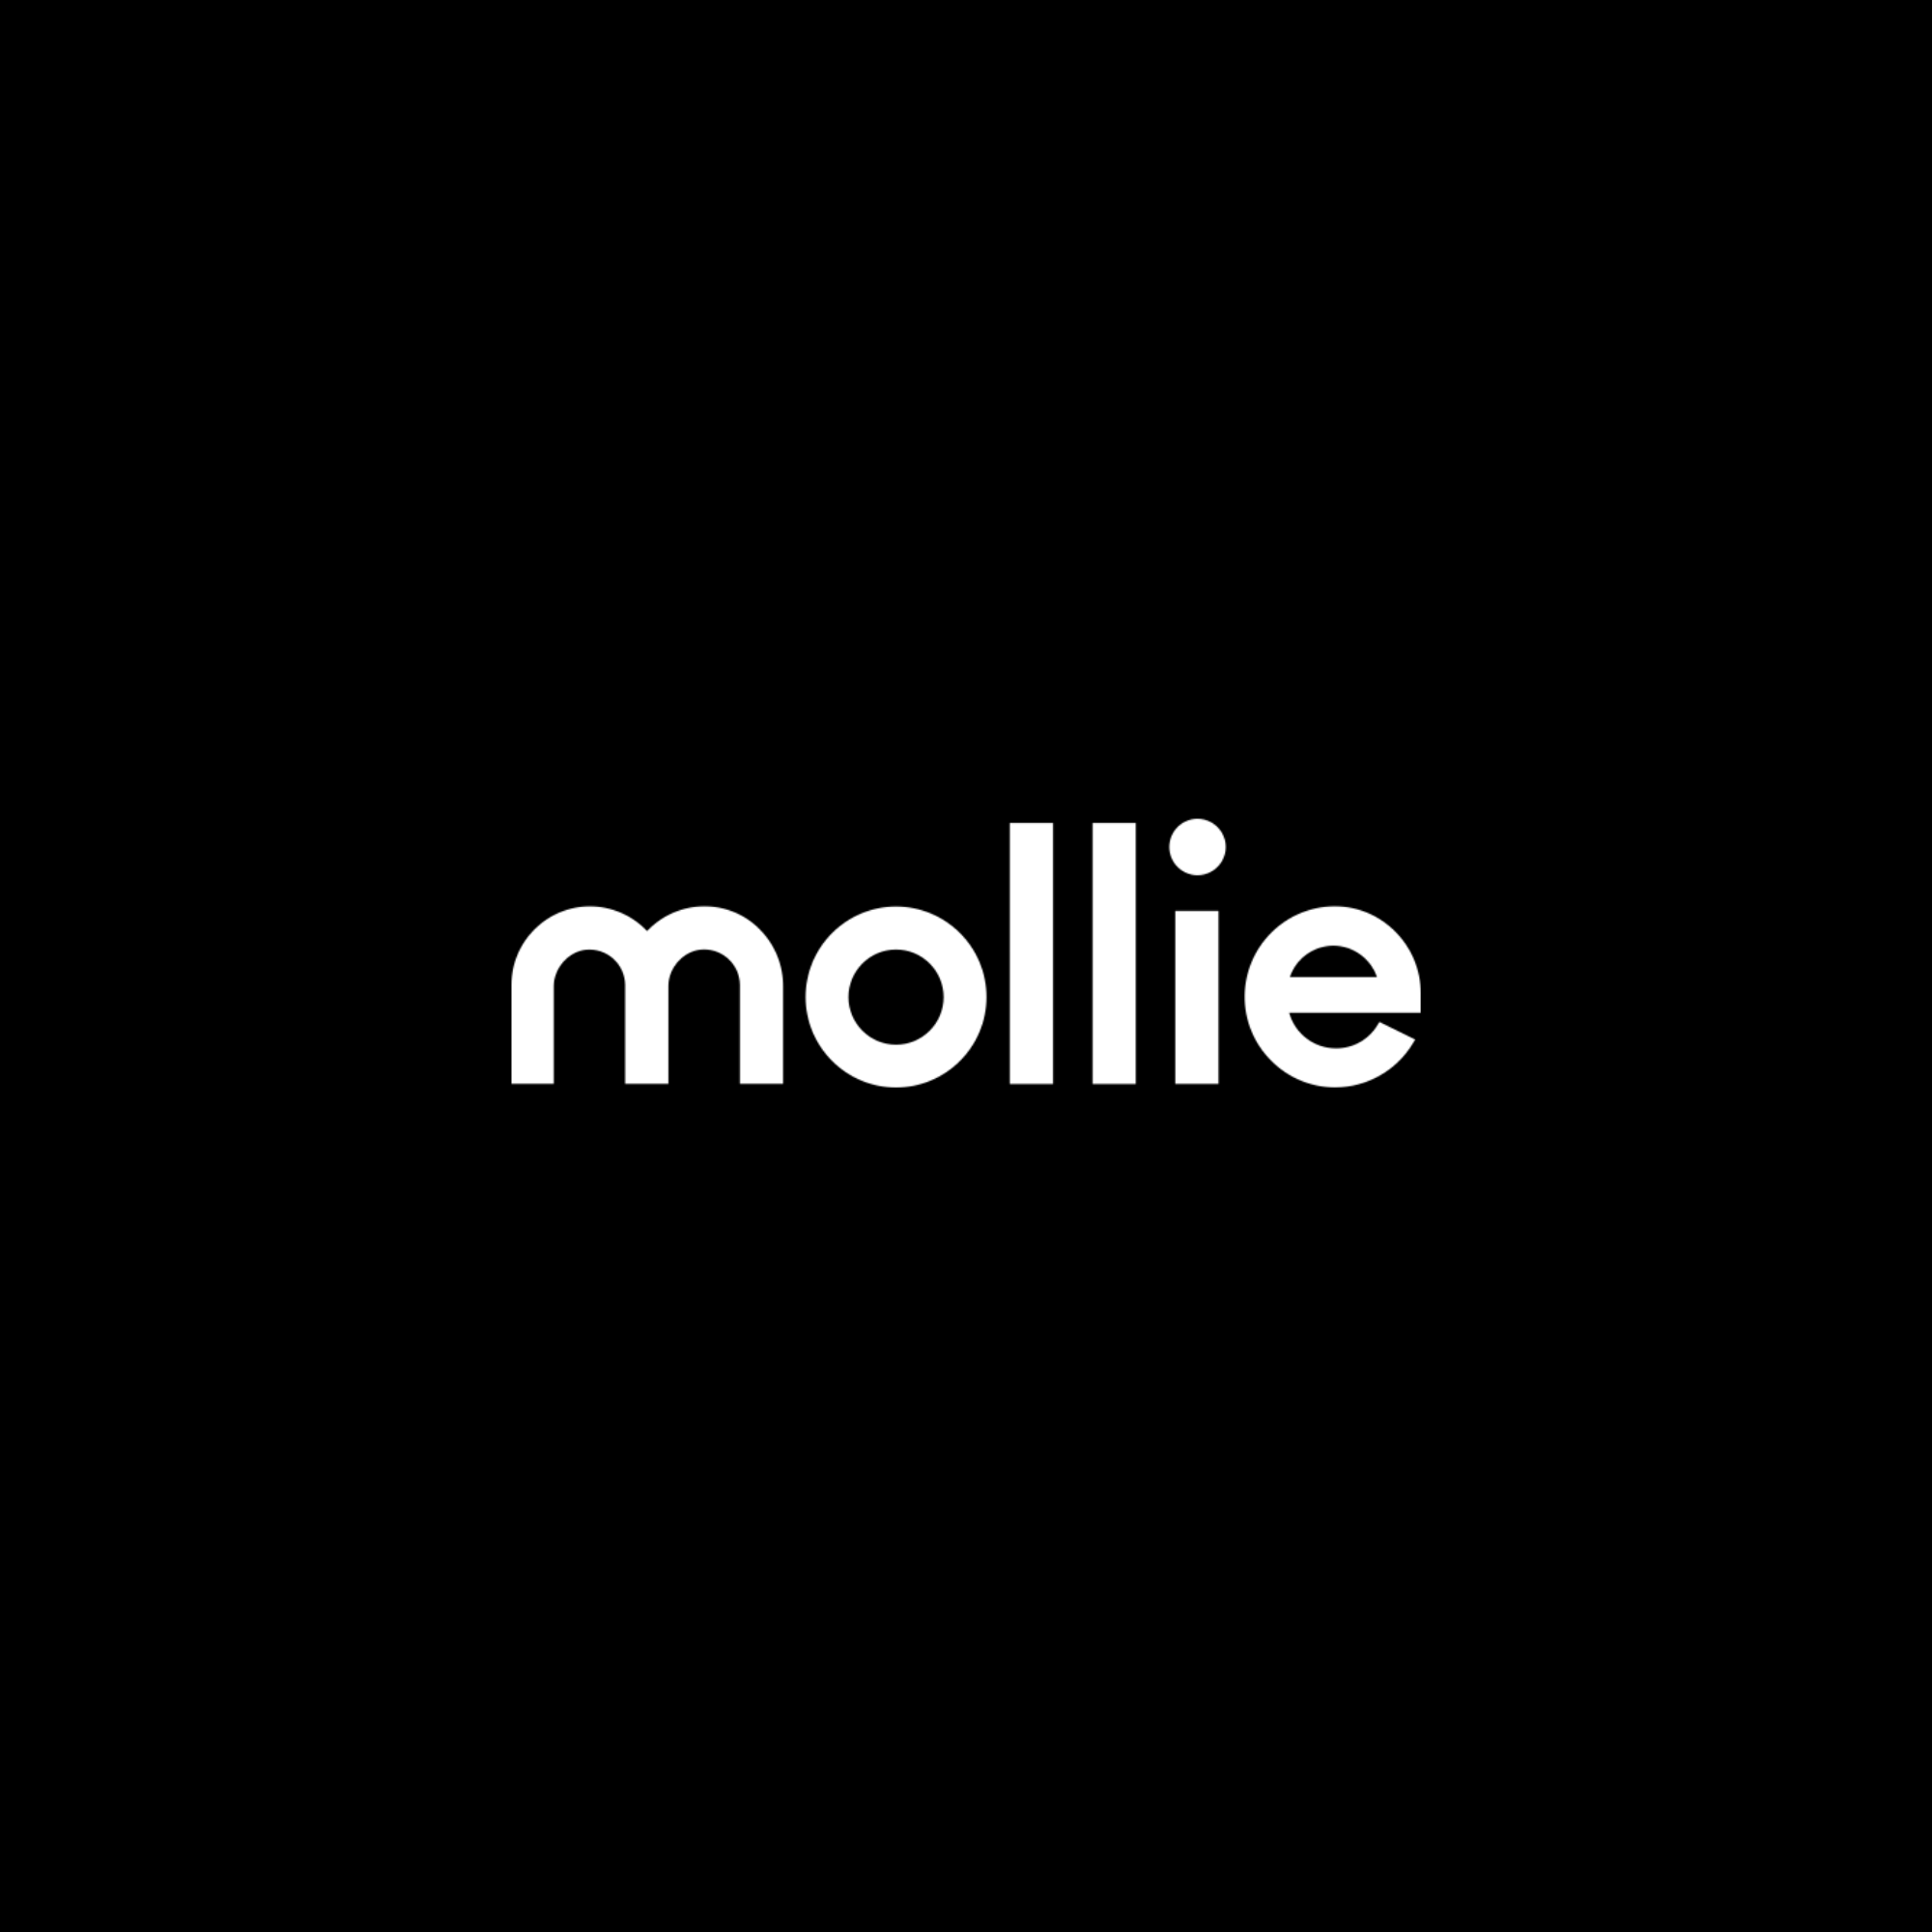 https://cdn2.hubspot.net/hubfs/5918819/Projects/Mollie/Logo_Mollie_Payments.png